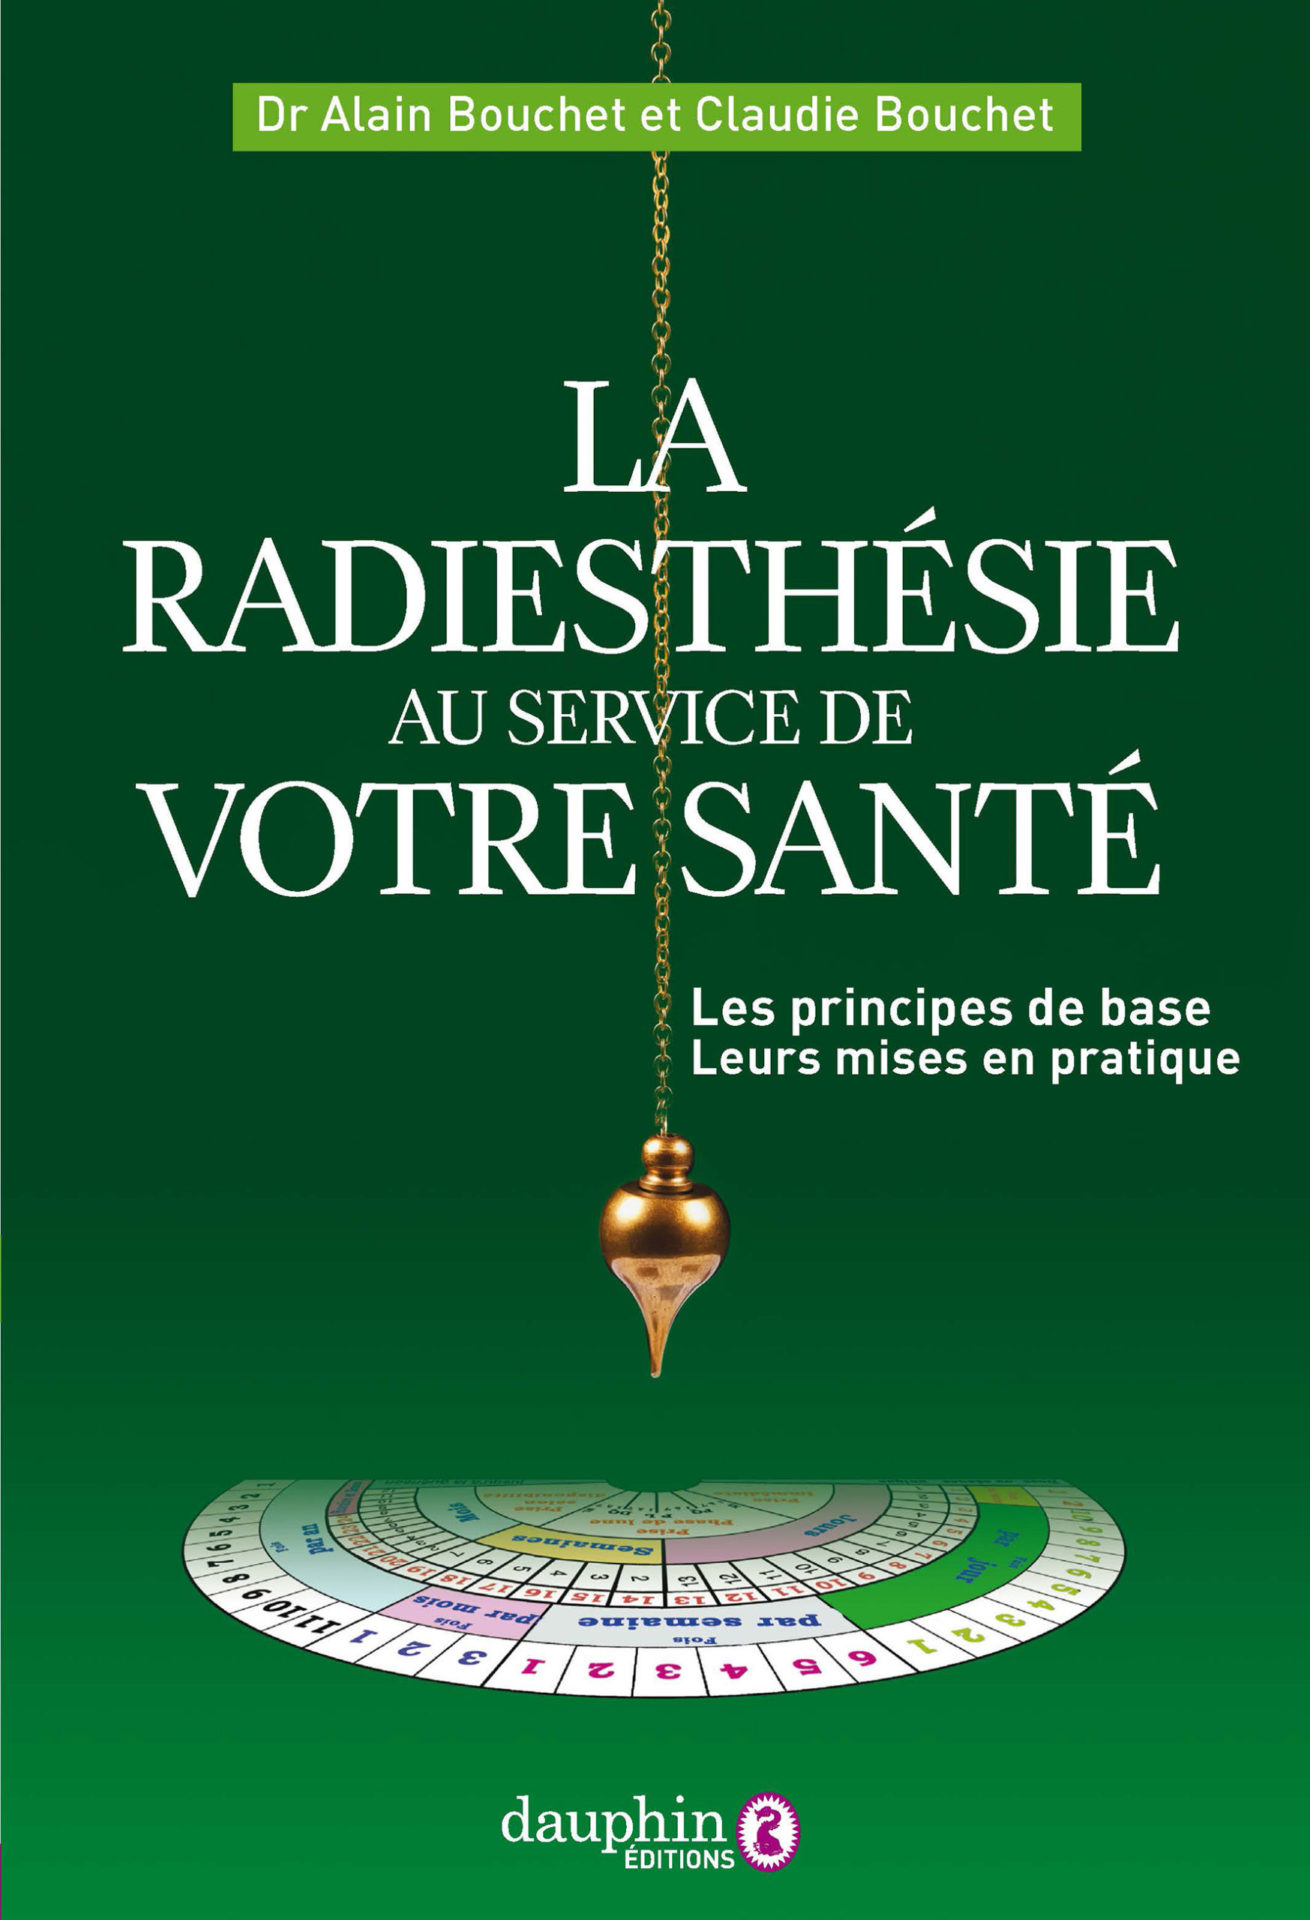 La radiesthésie au service de votre santé - Éditions du Dauphin